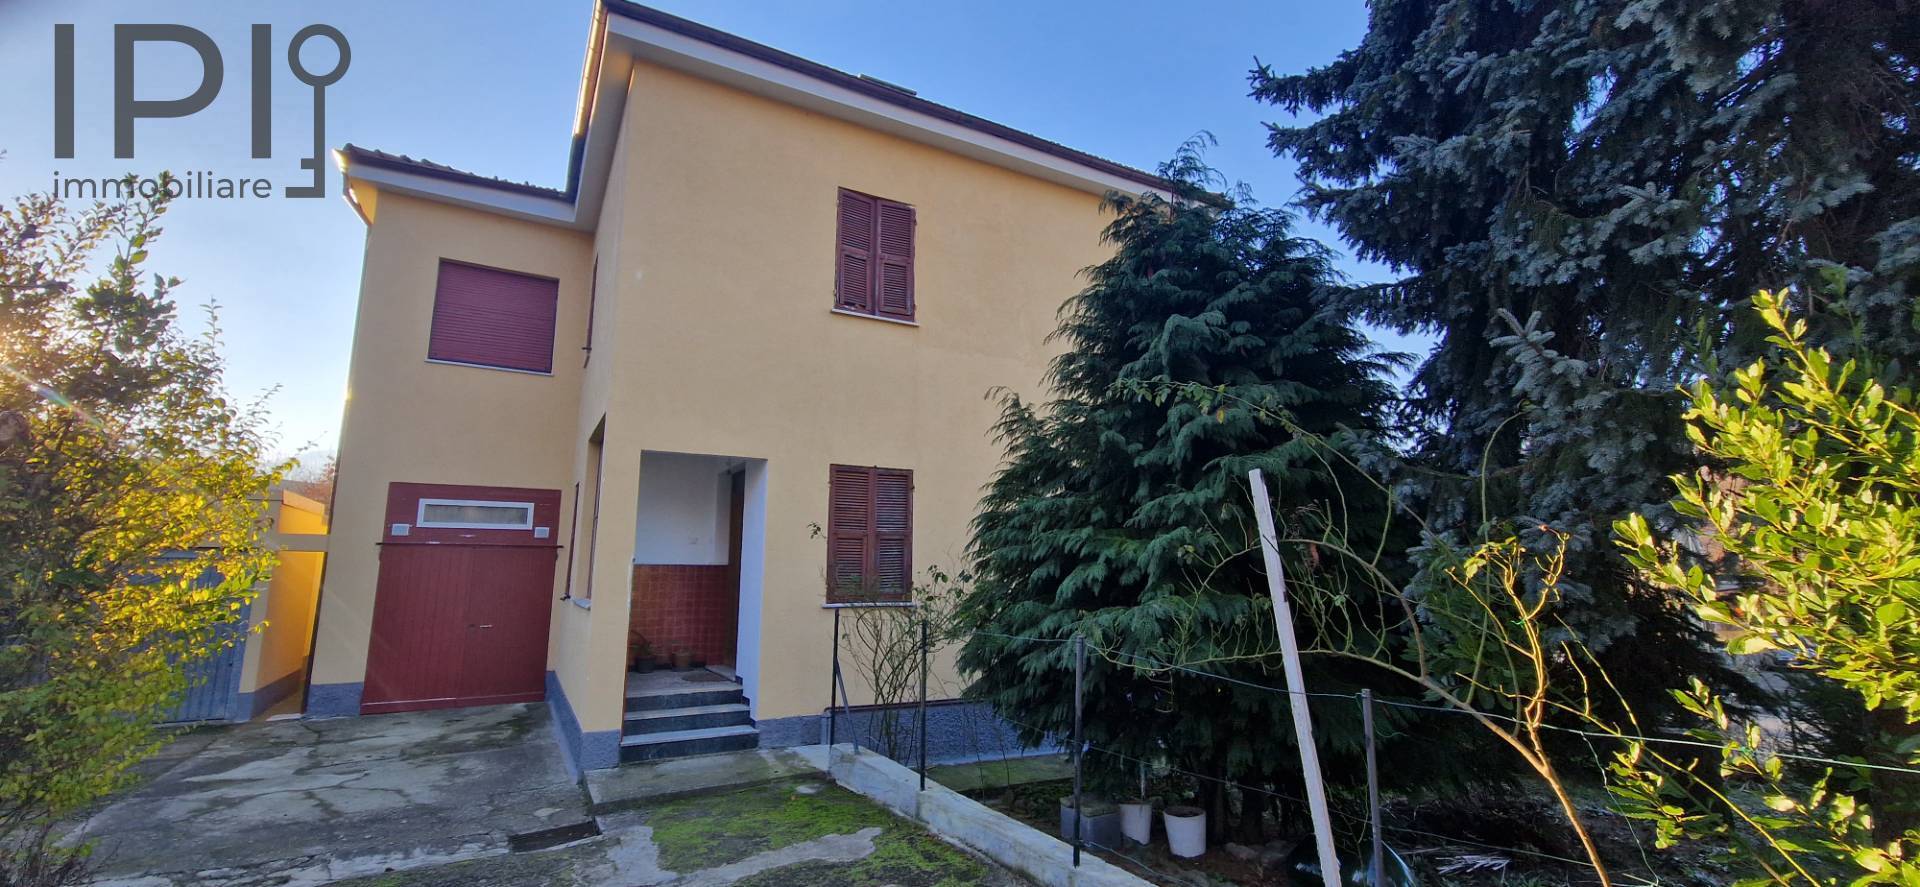 Villa in vendita a Altare, 10 locali, prezzo € 190.000 | PortaleAgenzieImmobiliari.it